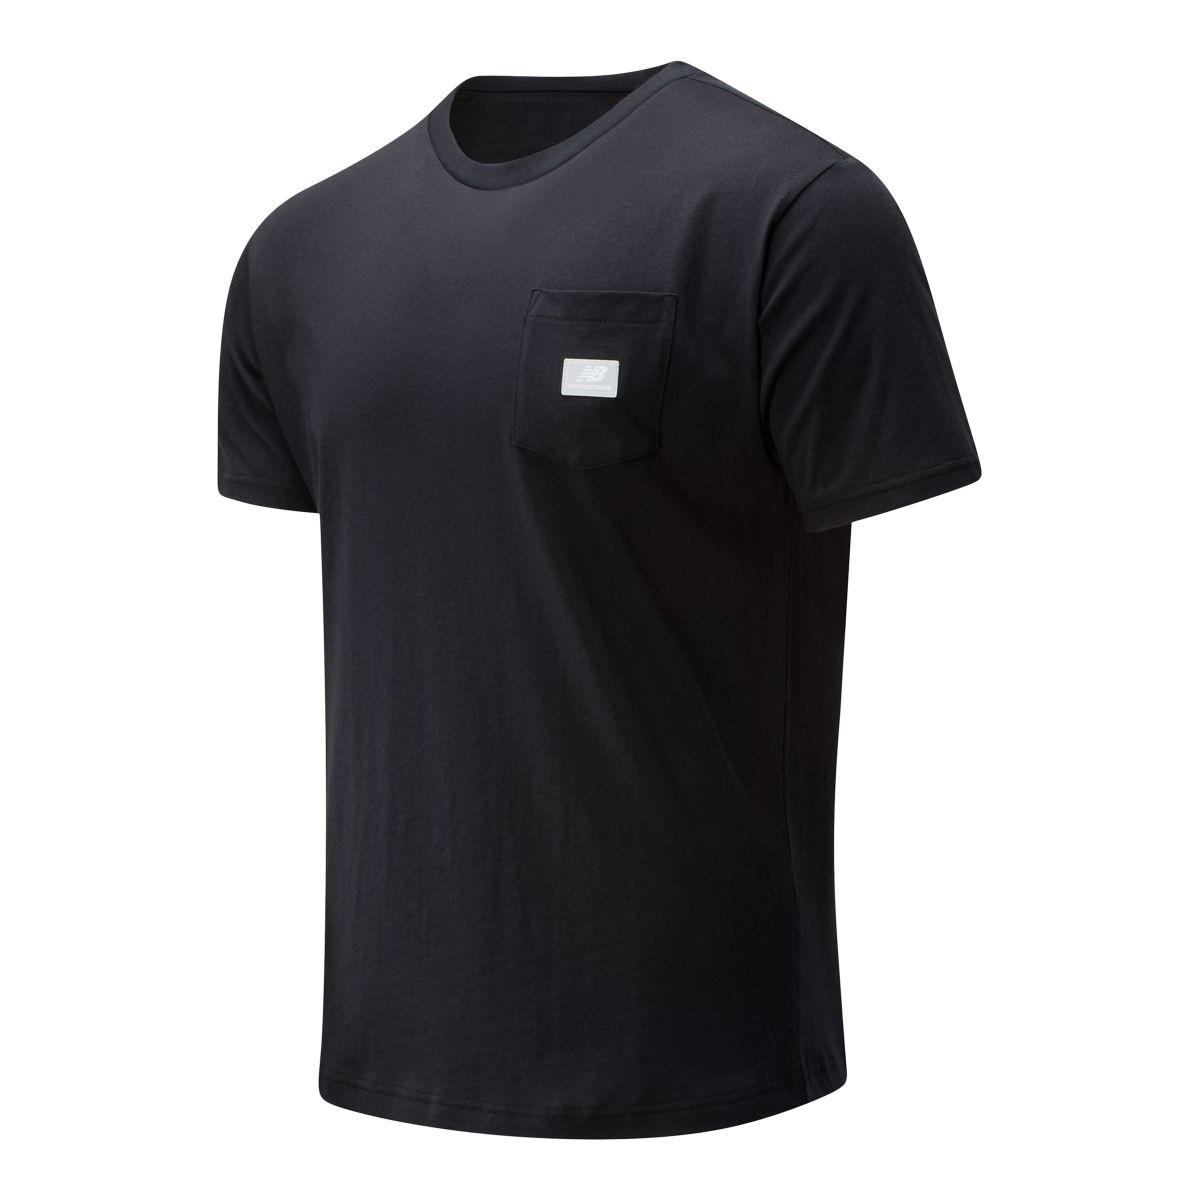 Homem T-Shirt NB Athletics Pocket - New Balance